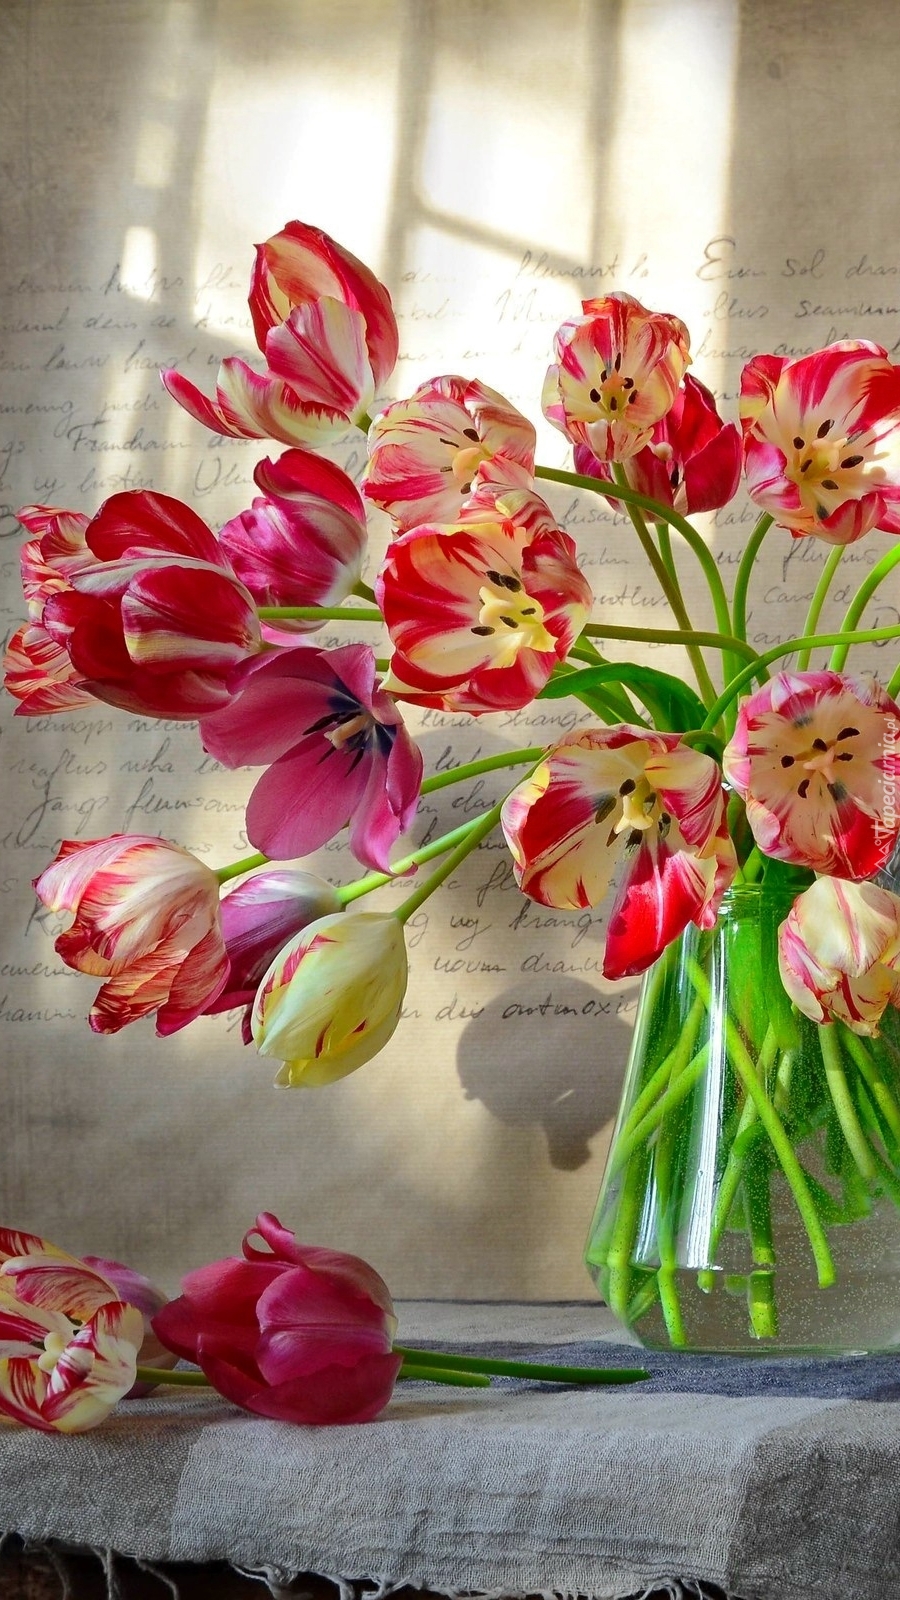 Bukiet różnokolorowych tulipanów w wazonie